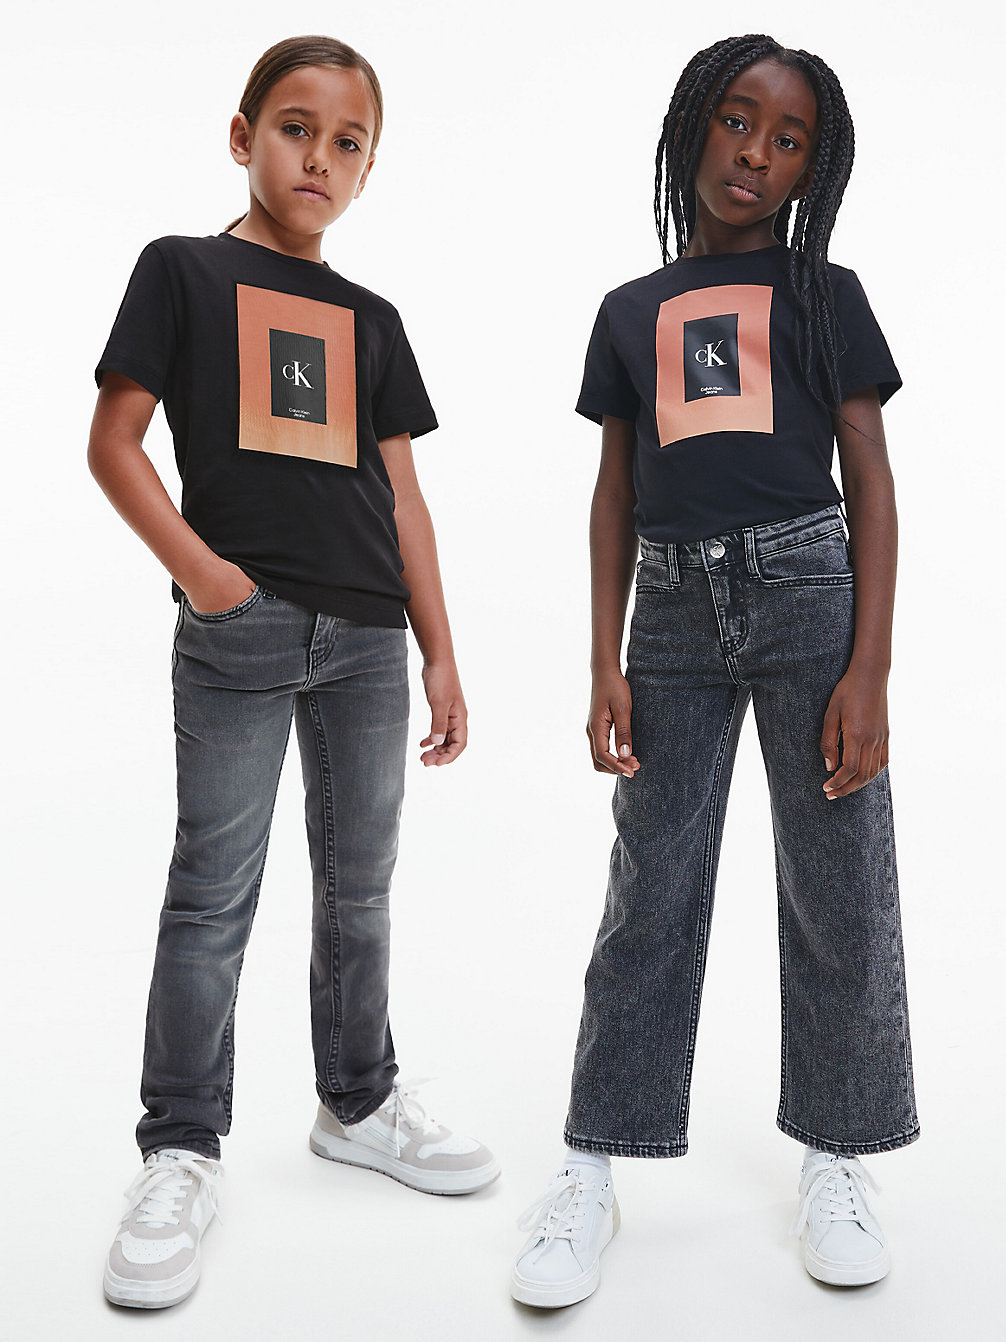 T-Shirt Unisex In Cotone Biologico > CK BLACK > undefined kids unisex > Calvin Klein